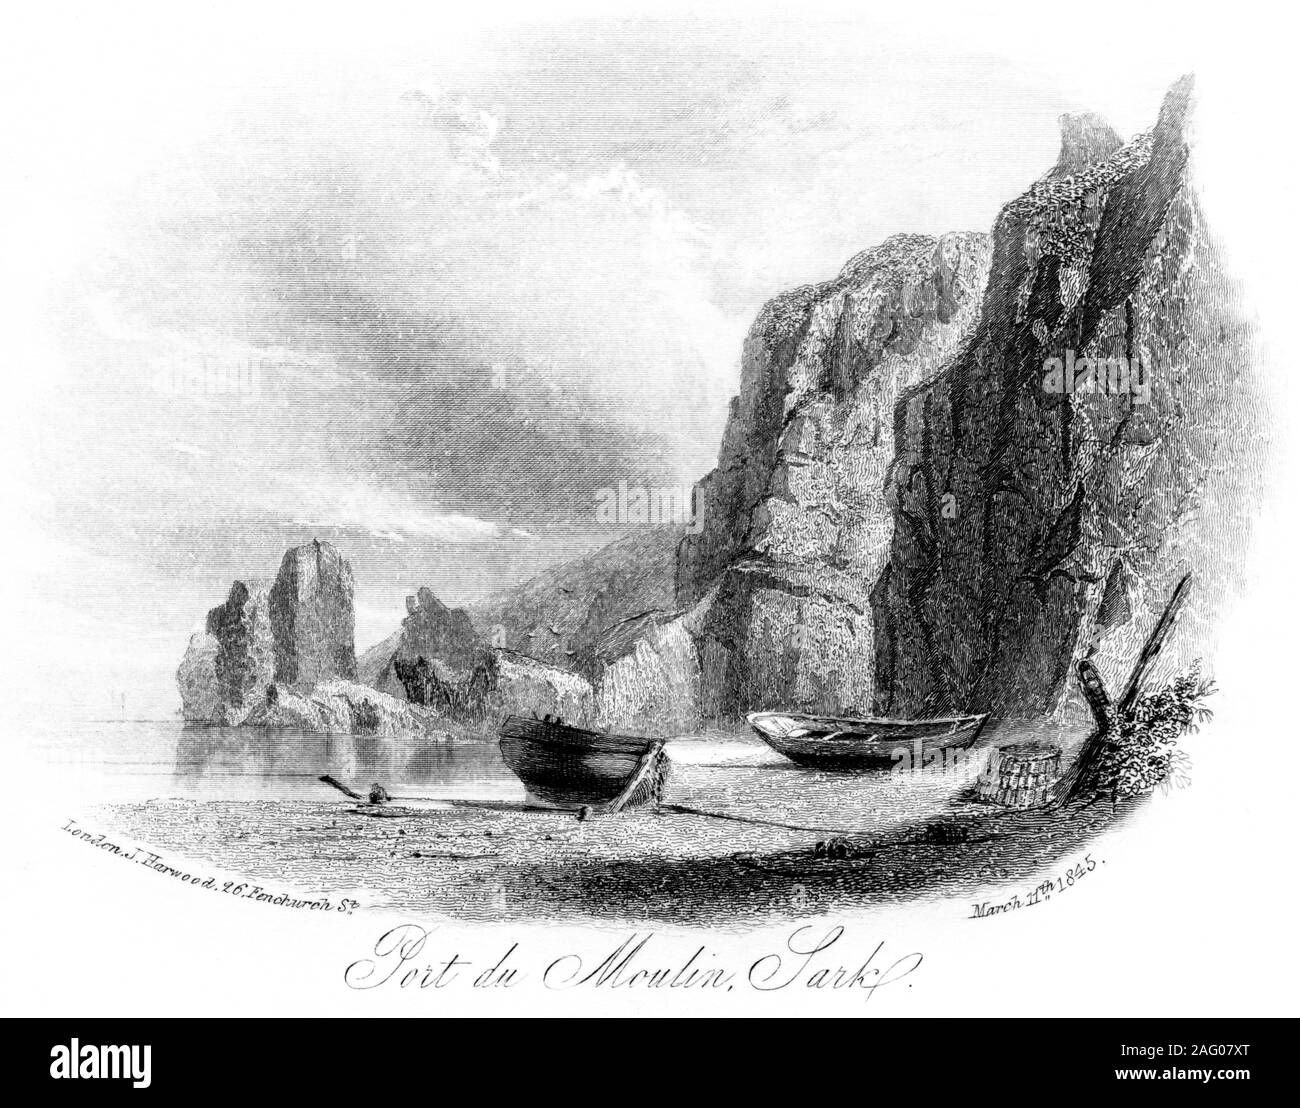 Un grabado de Port du Moulin, Sark, de fecha 11 de marzo de 1845 escaneadas en alta resolución. Cree libres de derechos de autor. Foto de stock